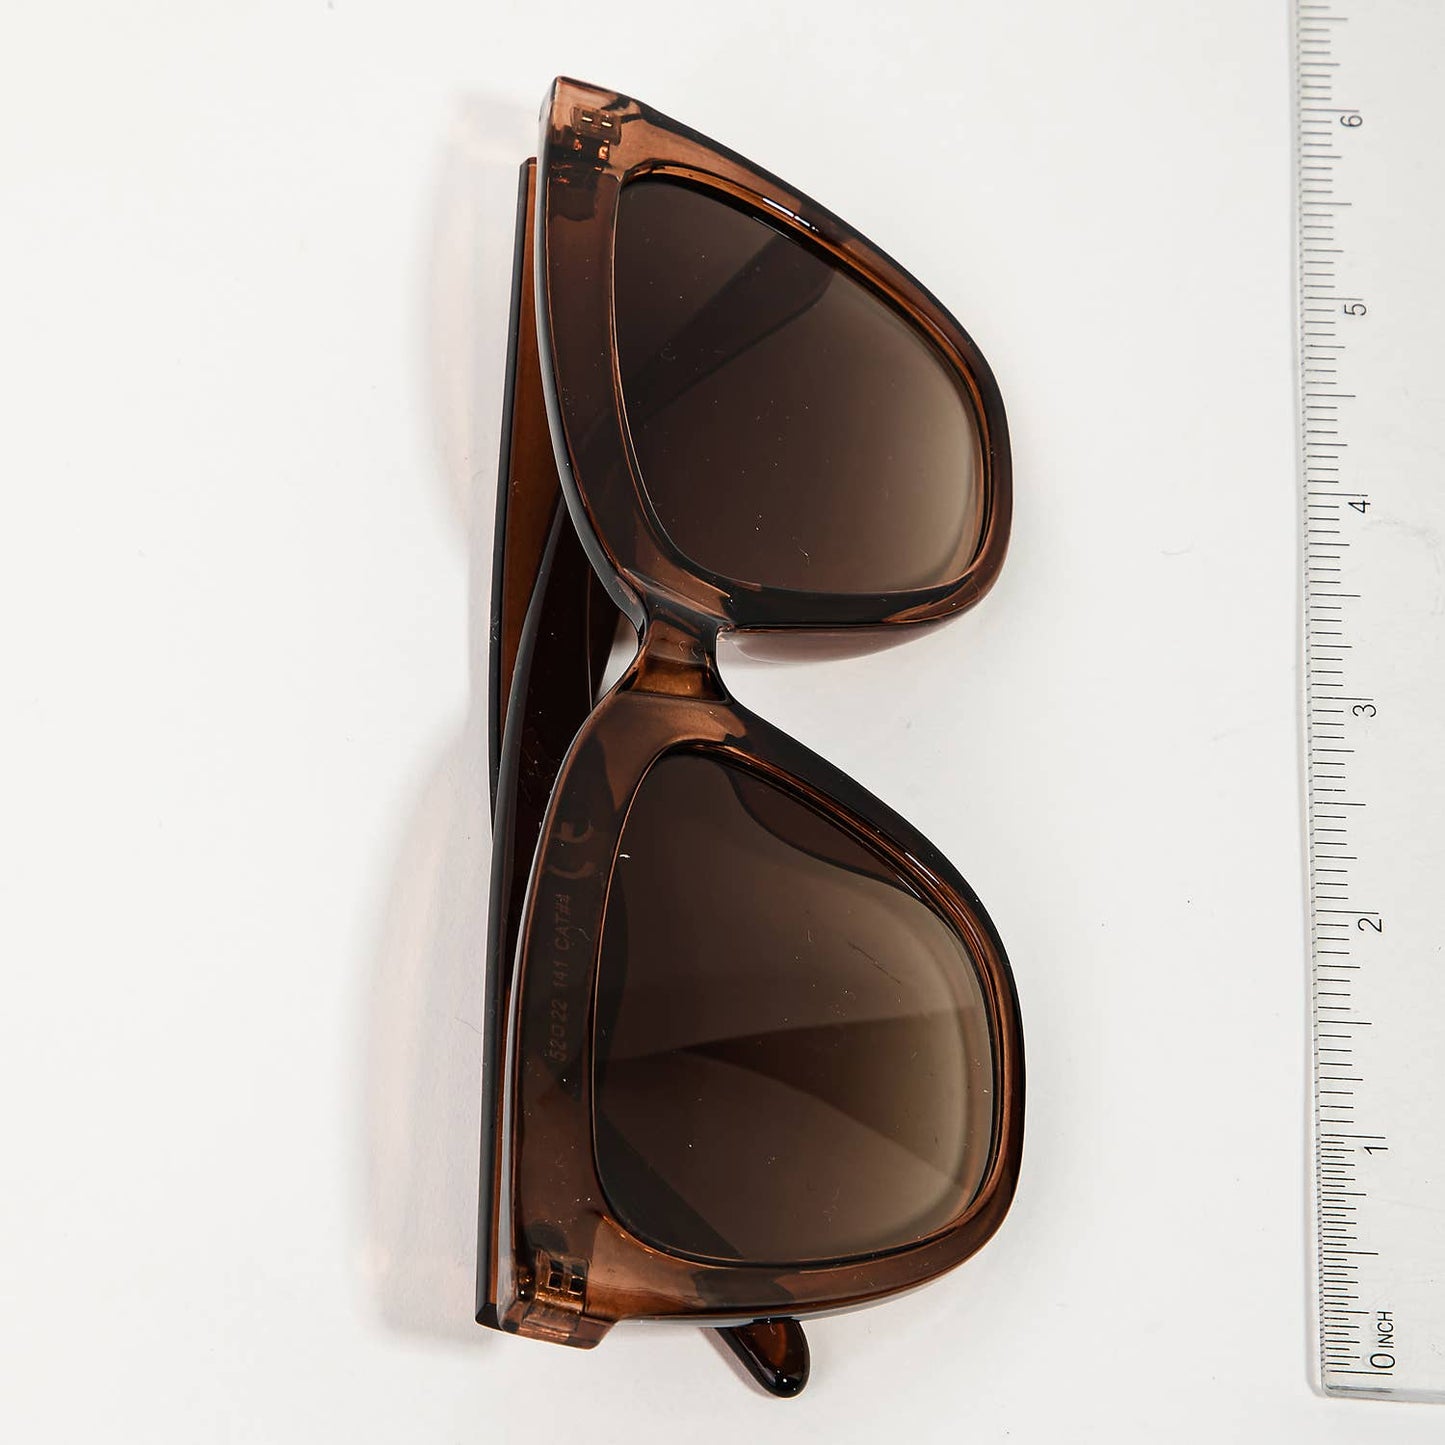 Acetate Frame Fashion Sunglasses